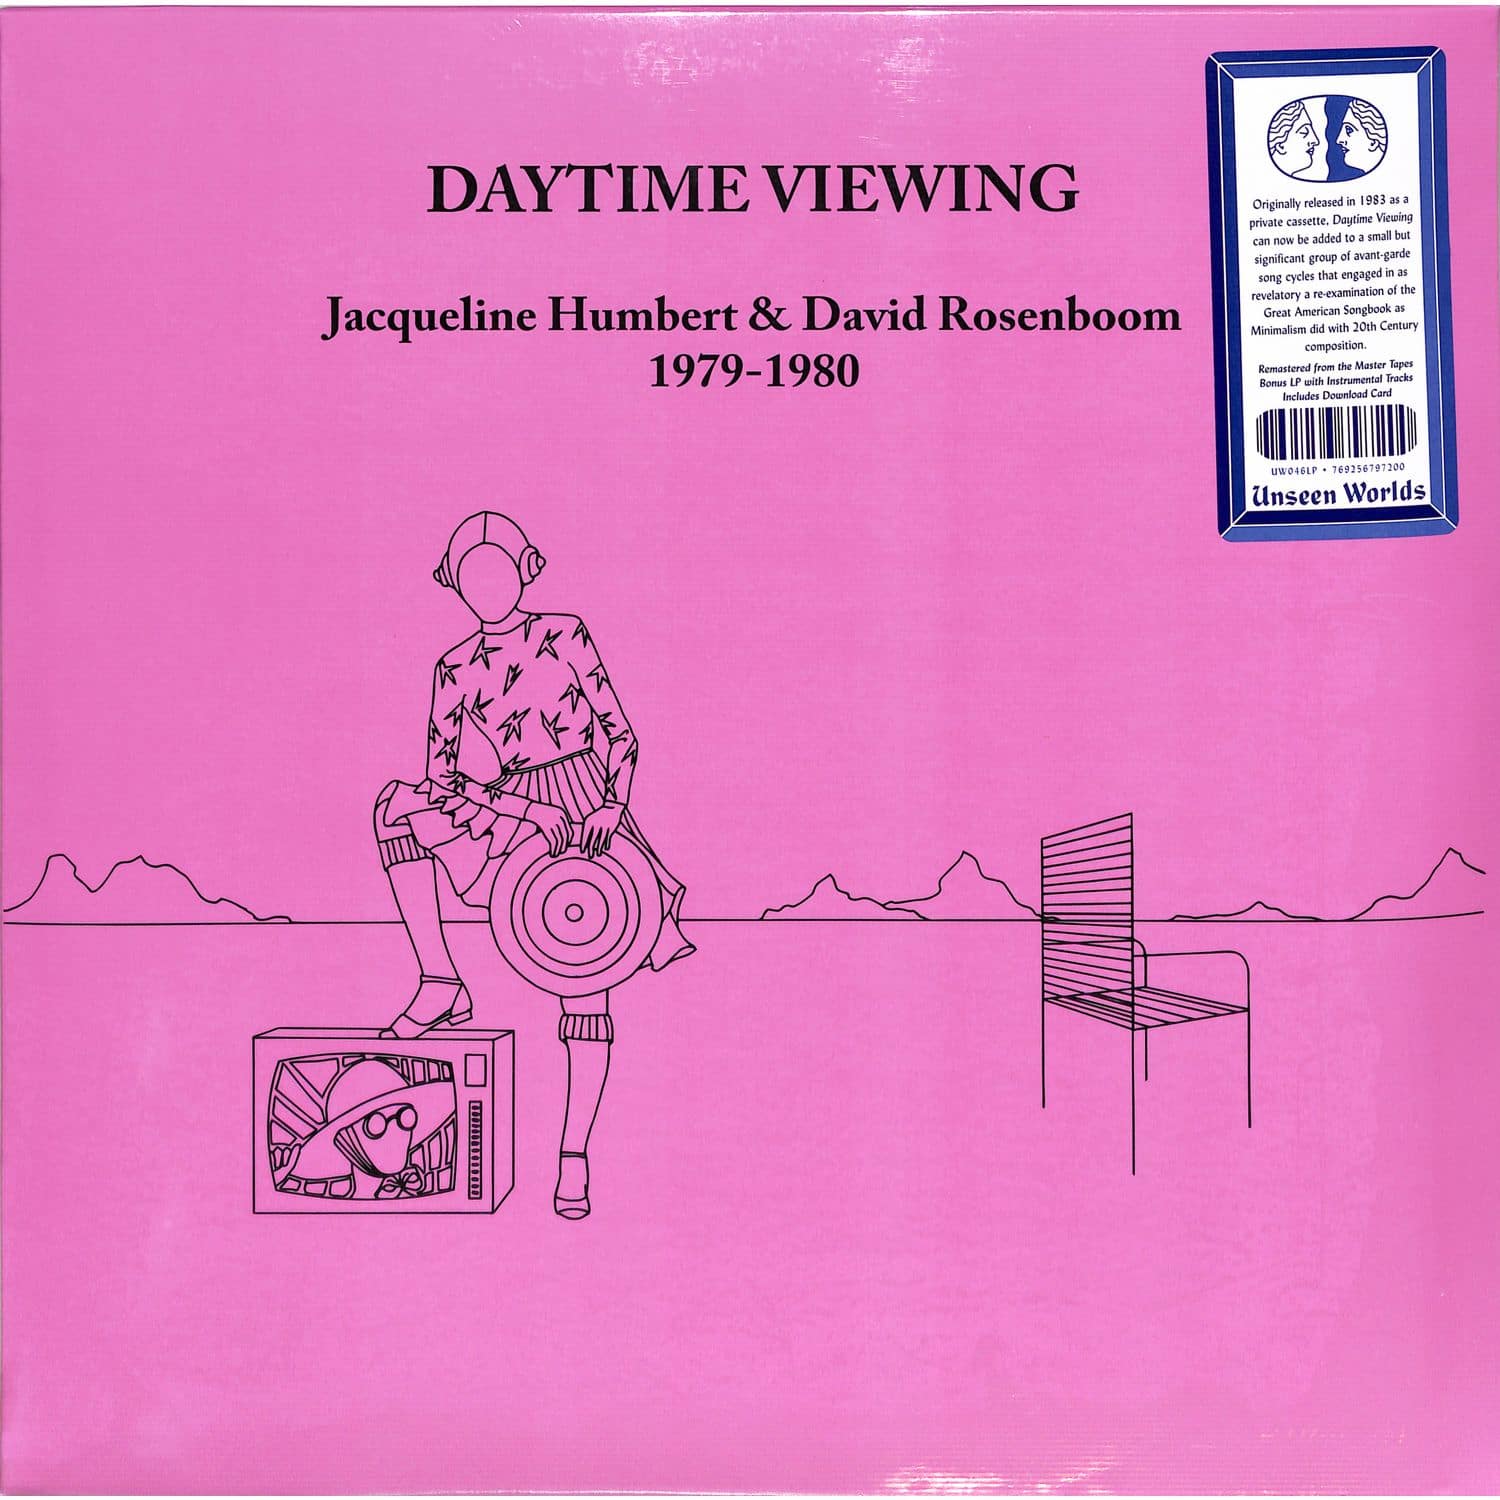 Jacqueline Humbert & David Rosenboom - DAYTIME VIEWING 